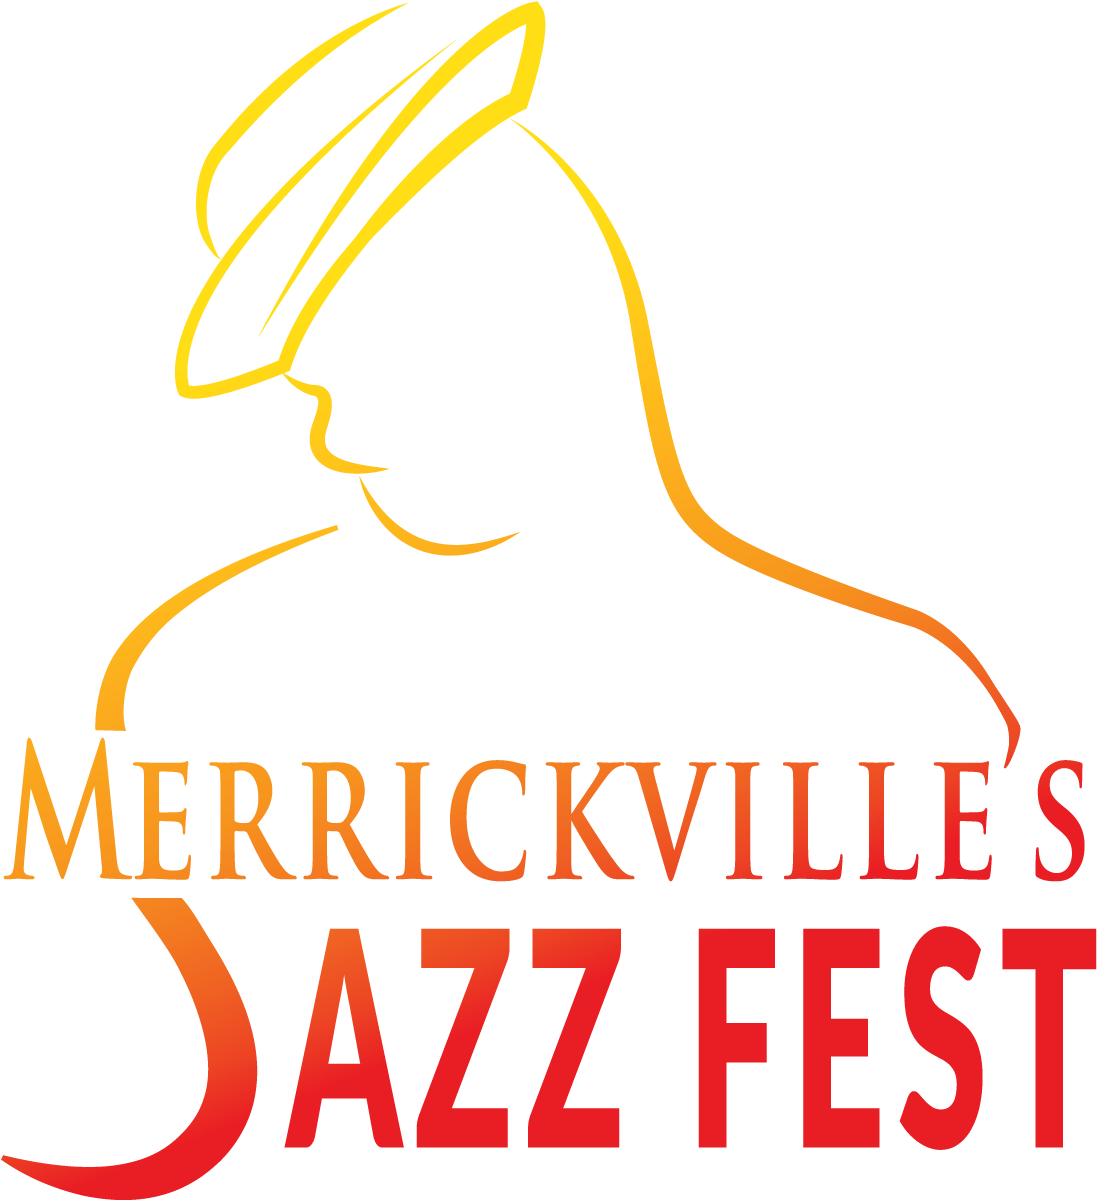 2018 Merrickville's Jazz Fest - Festival (1313x1688), Png Download